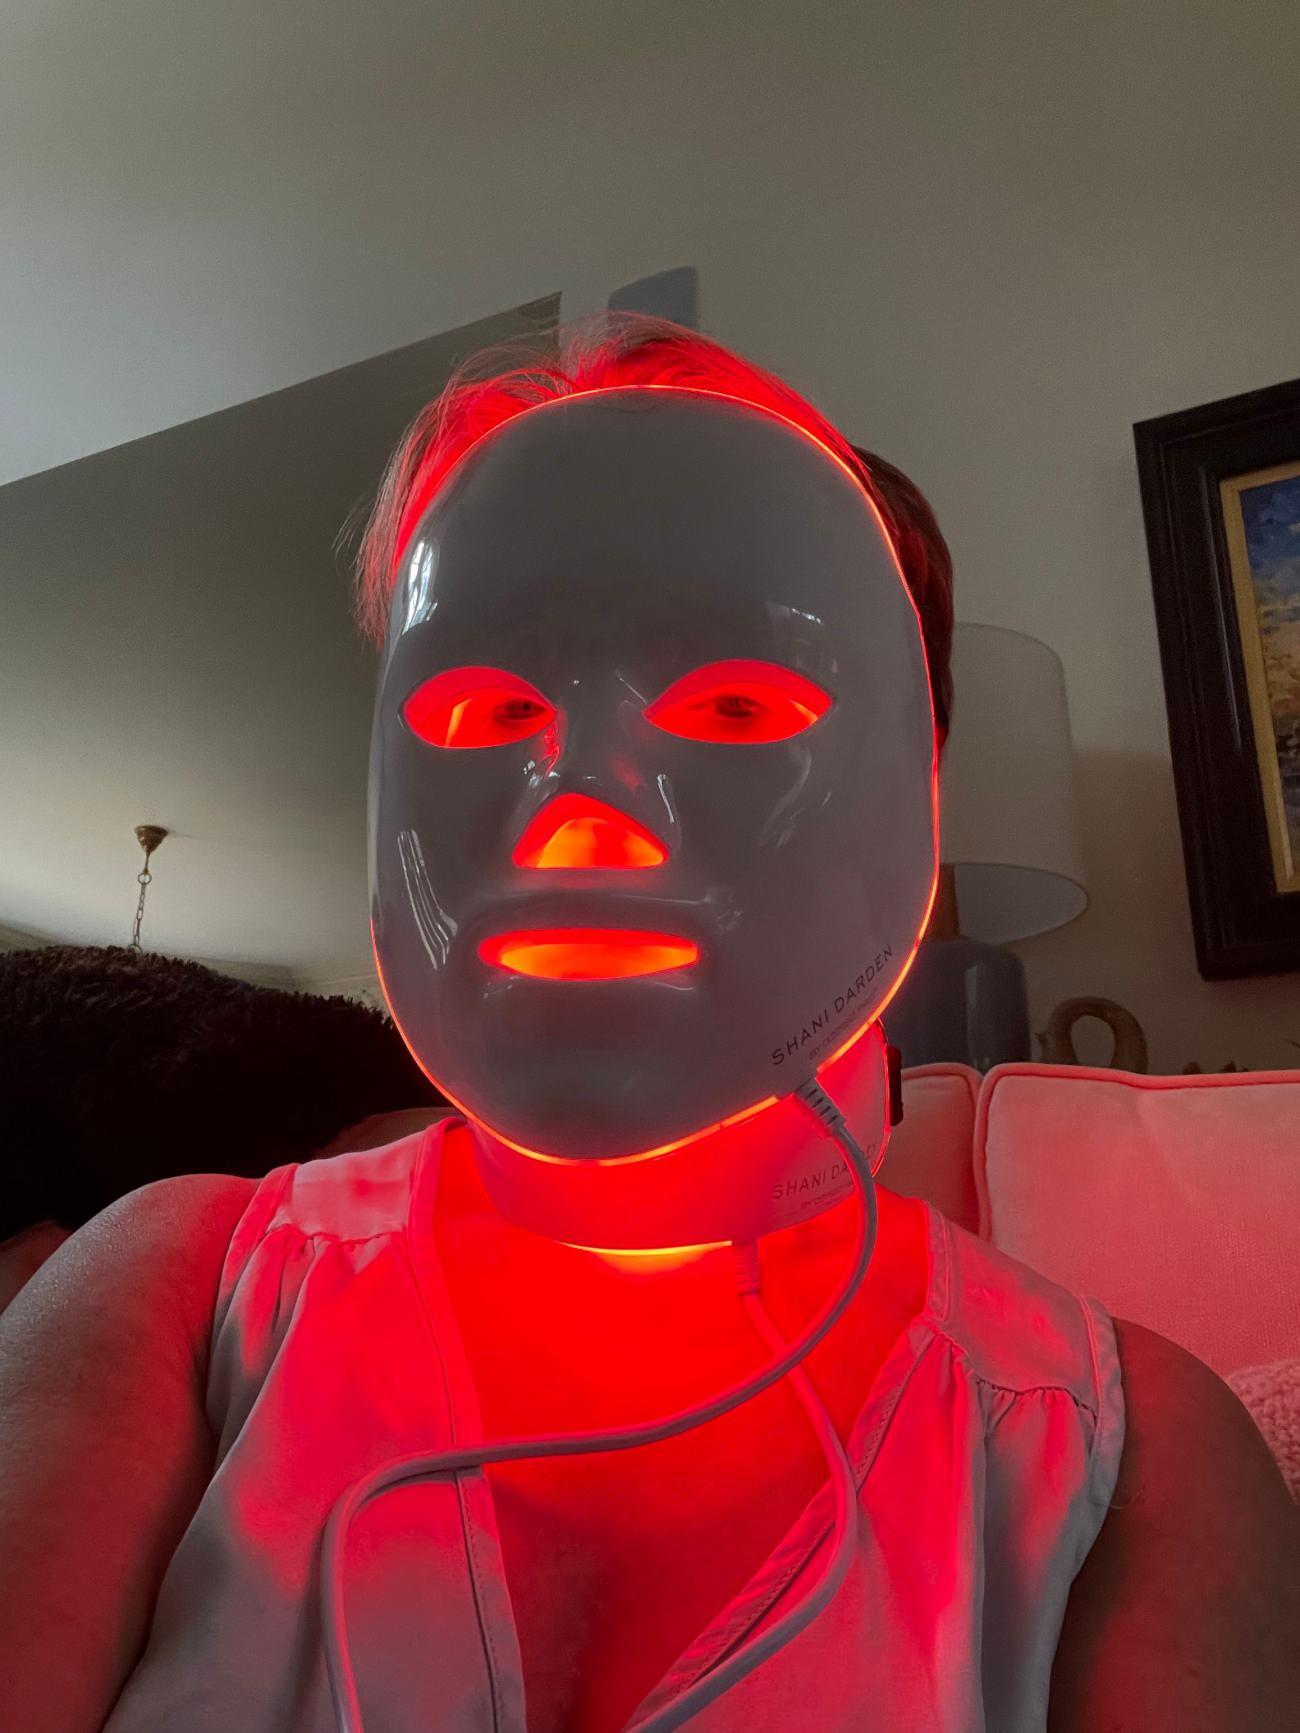 Kırmızı LED ışıklı yüz maskeleri trend oldu! Led maske faydaları nelerdir?